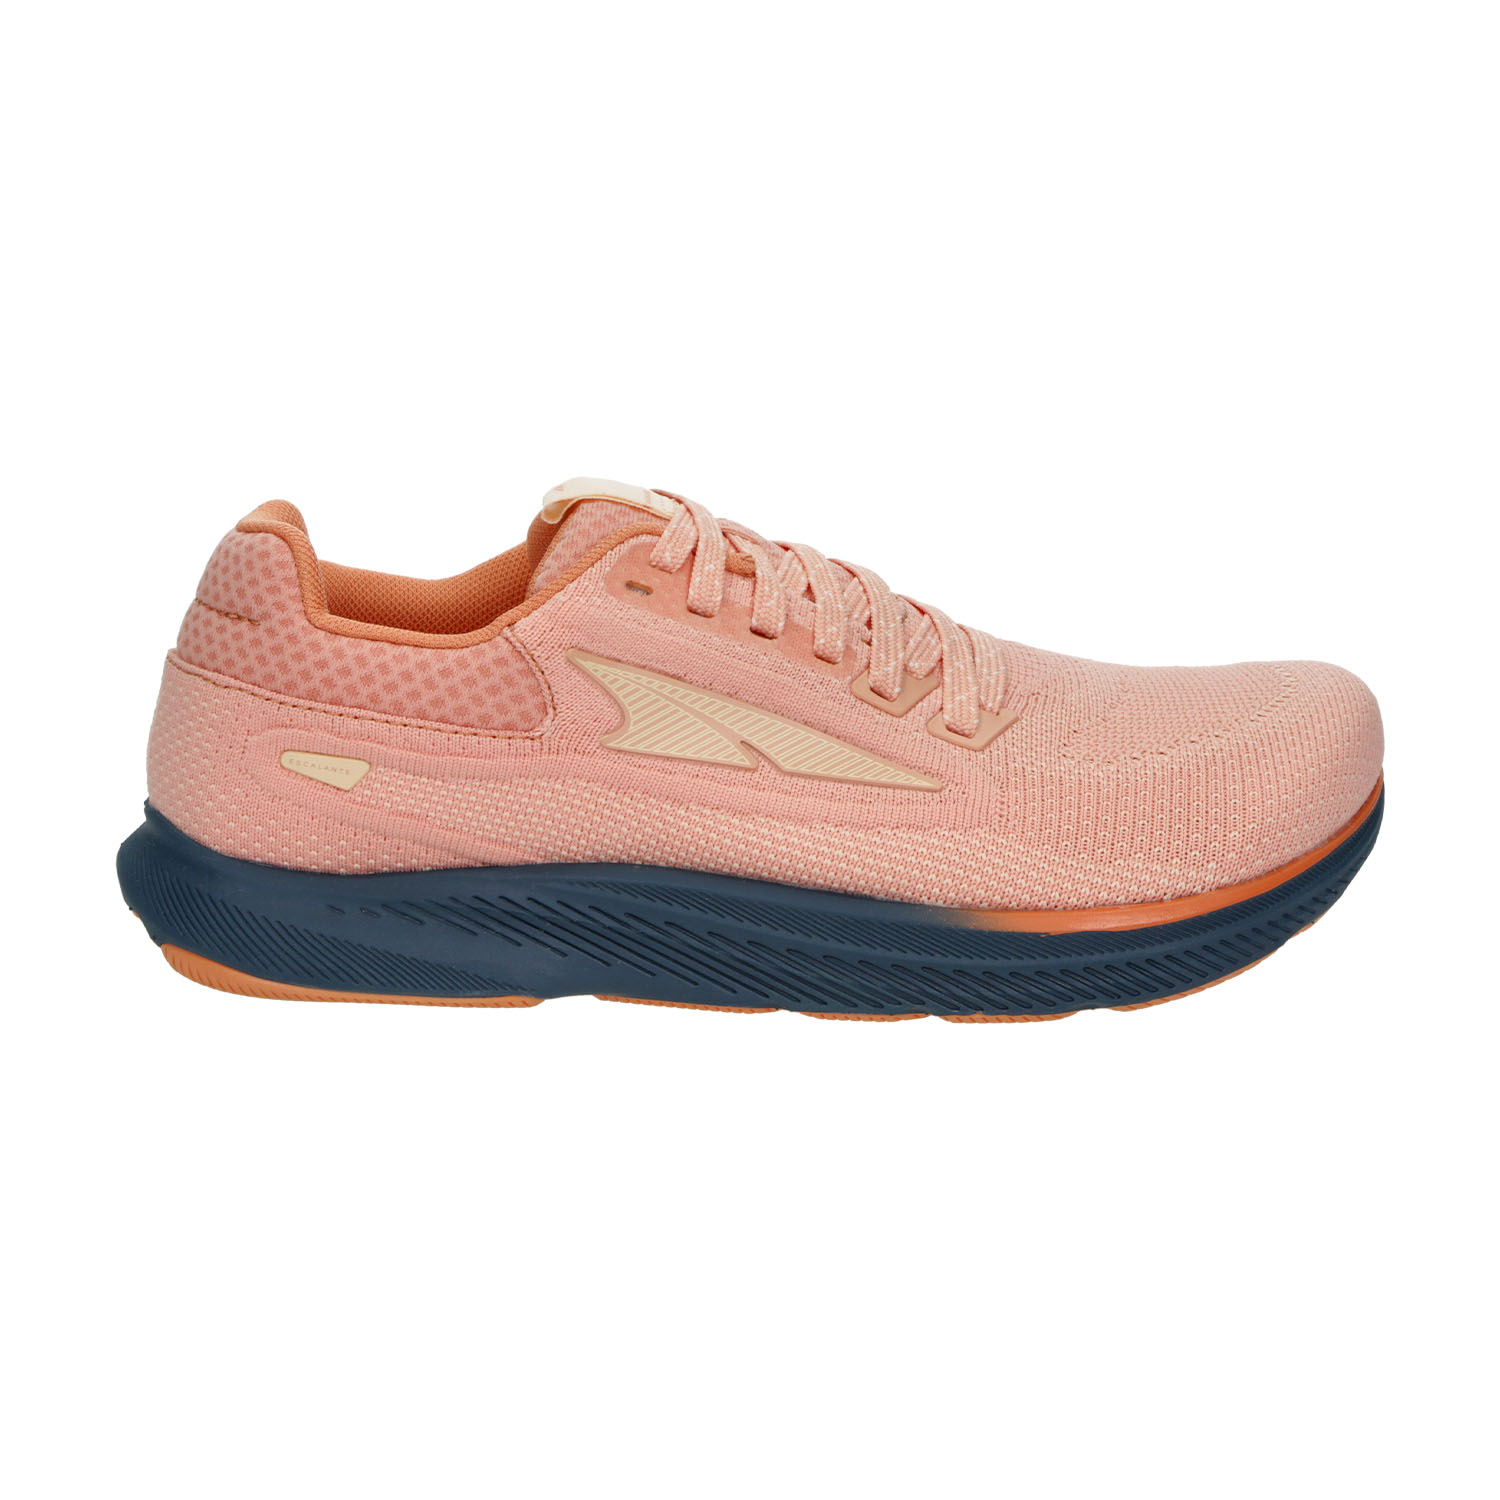 Altra Escalante 3 Zapatillas de Running Mujer - Dusty Pink